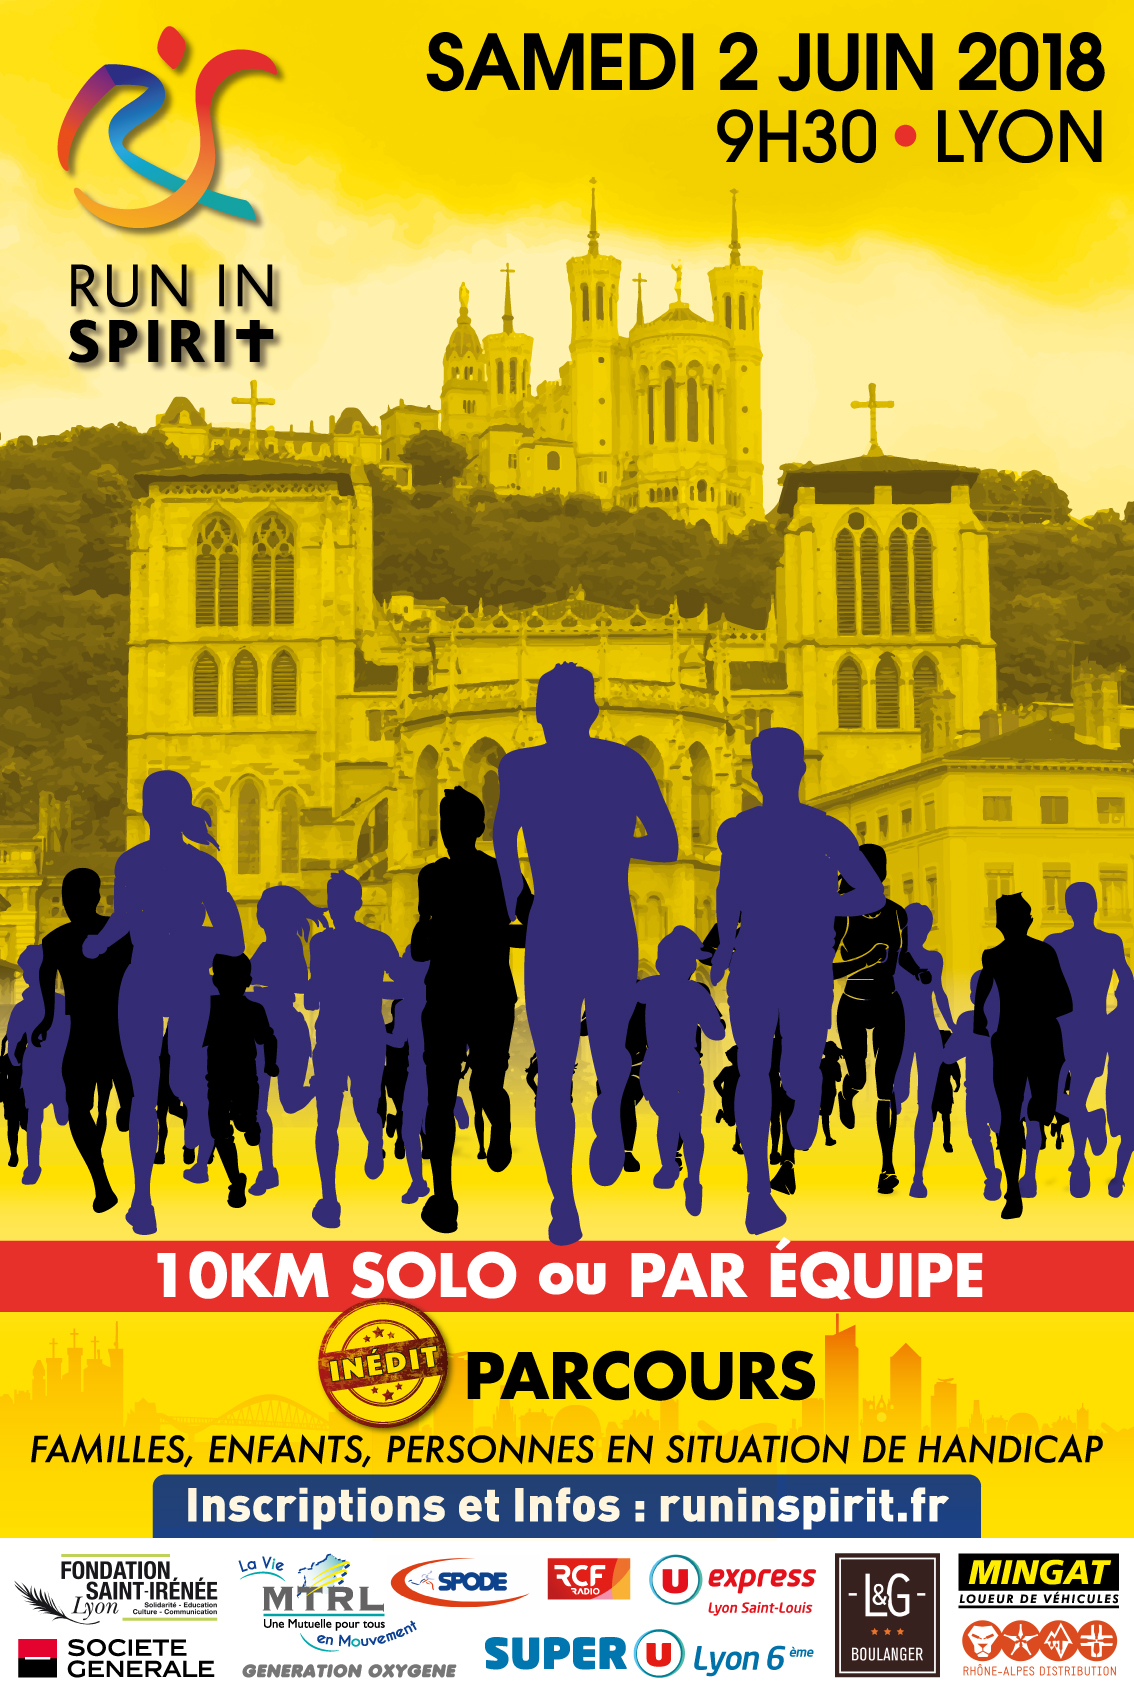 Venez courir avec la Fondation sur les pas de Saint-Irénée le samedi 2 juin à 9h30